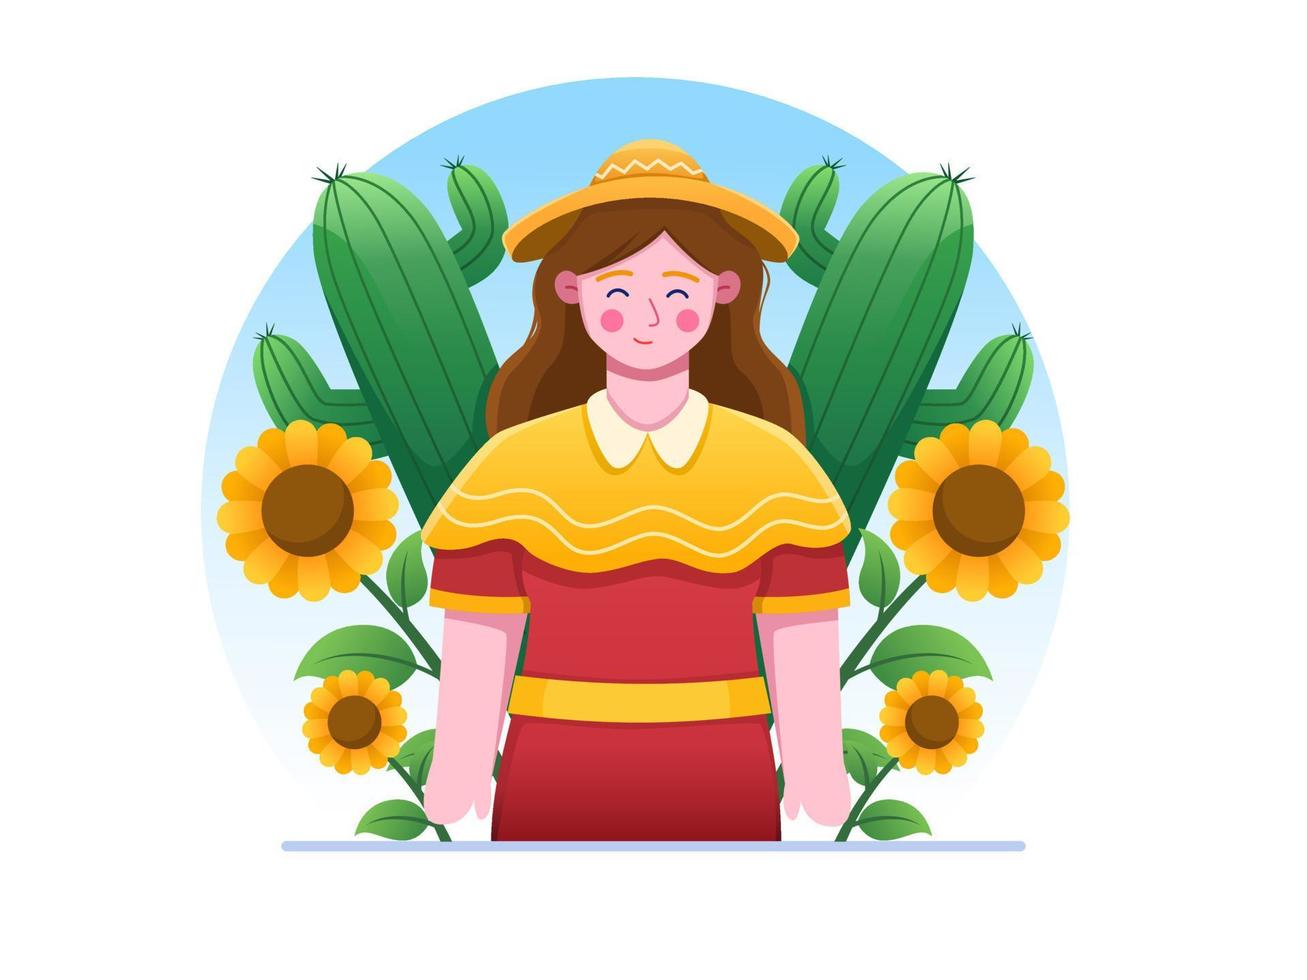 festa junina vektor tecknad illustration med glad kvinna bär sombrero och klänning, med vacker solros och kaktus bakgrund. kan användas för vykort, gratulationskort, tryck, mall, webb, etc.